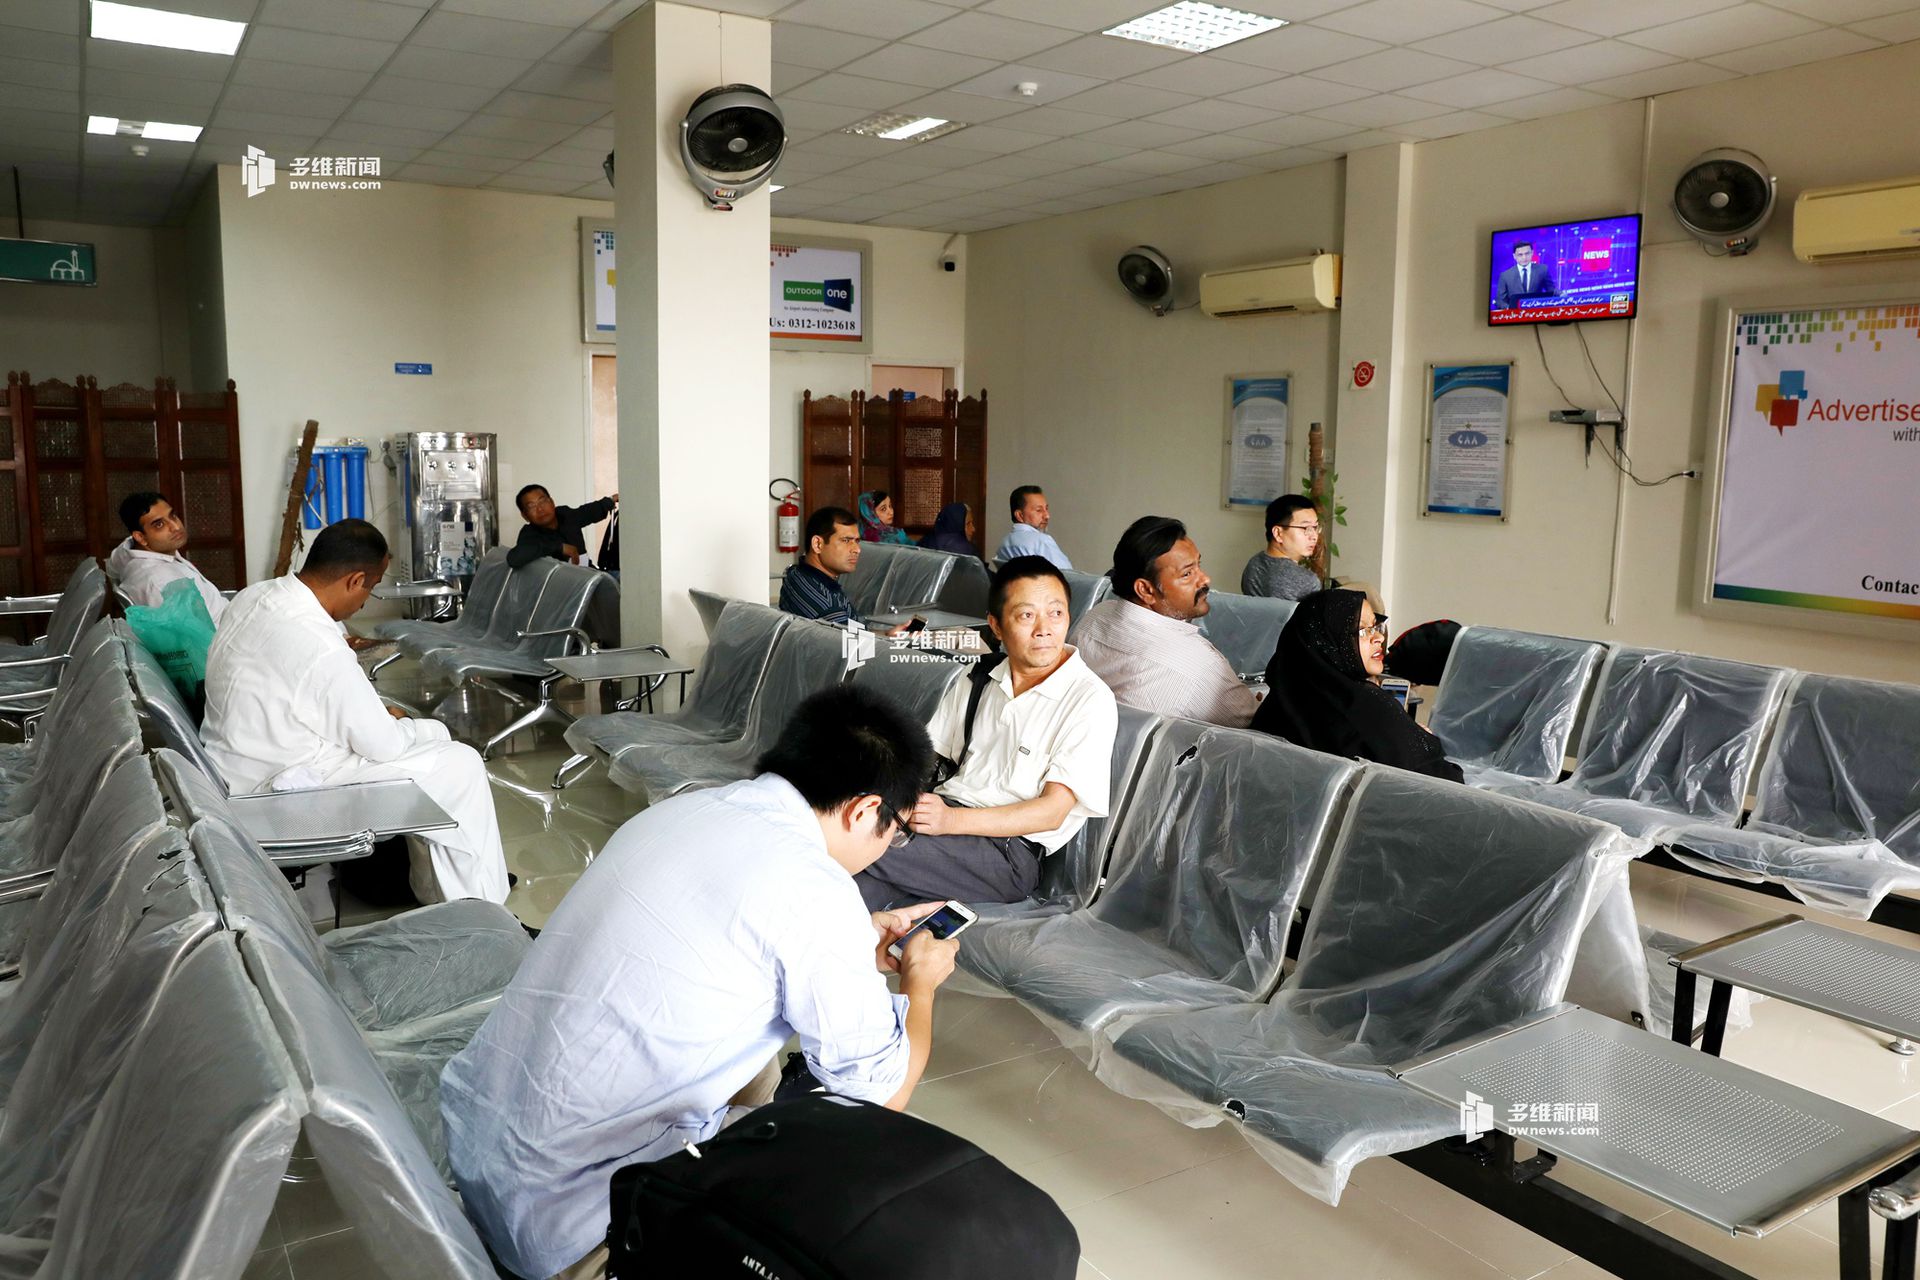 瓜达尔机场里面候机的中国人，现在的机场很小，每周也只有几趟去往卡拉奇的航班。中国民航将承建瓜达尔国际机场项目，建成后将成为巴基斯坦最大的机场。